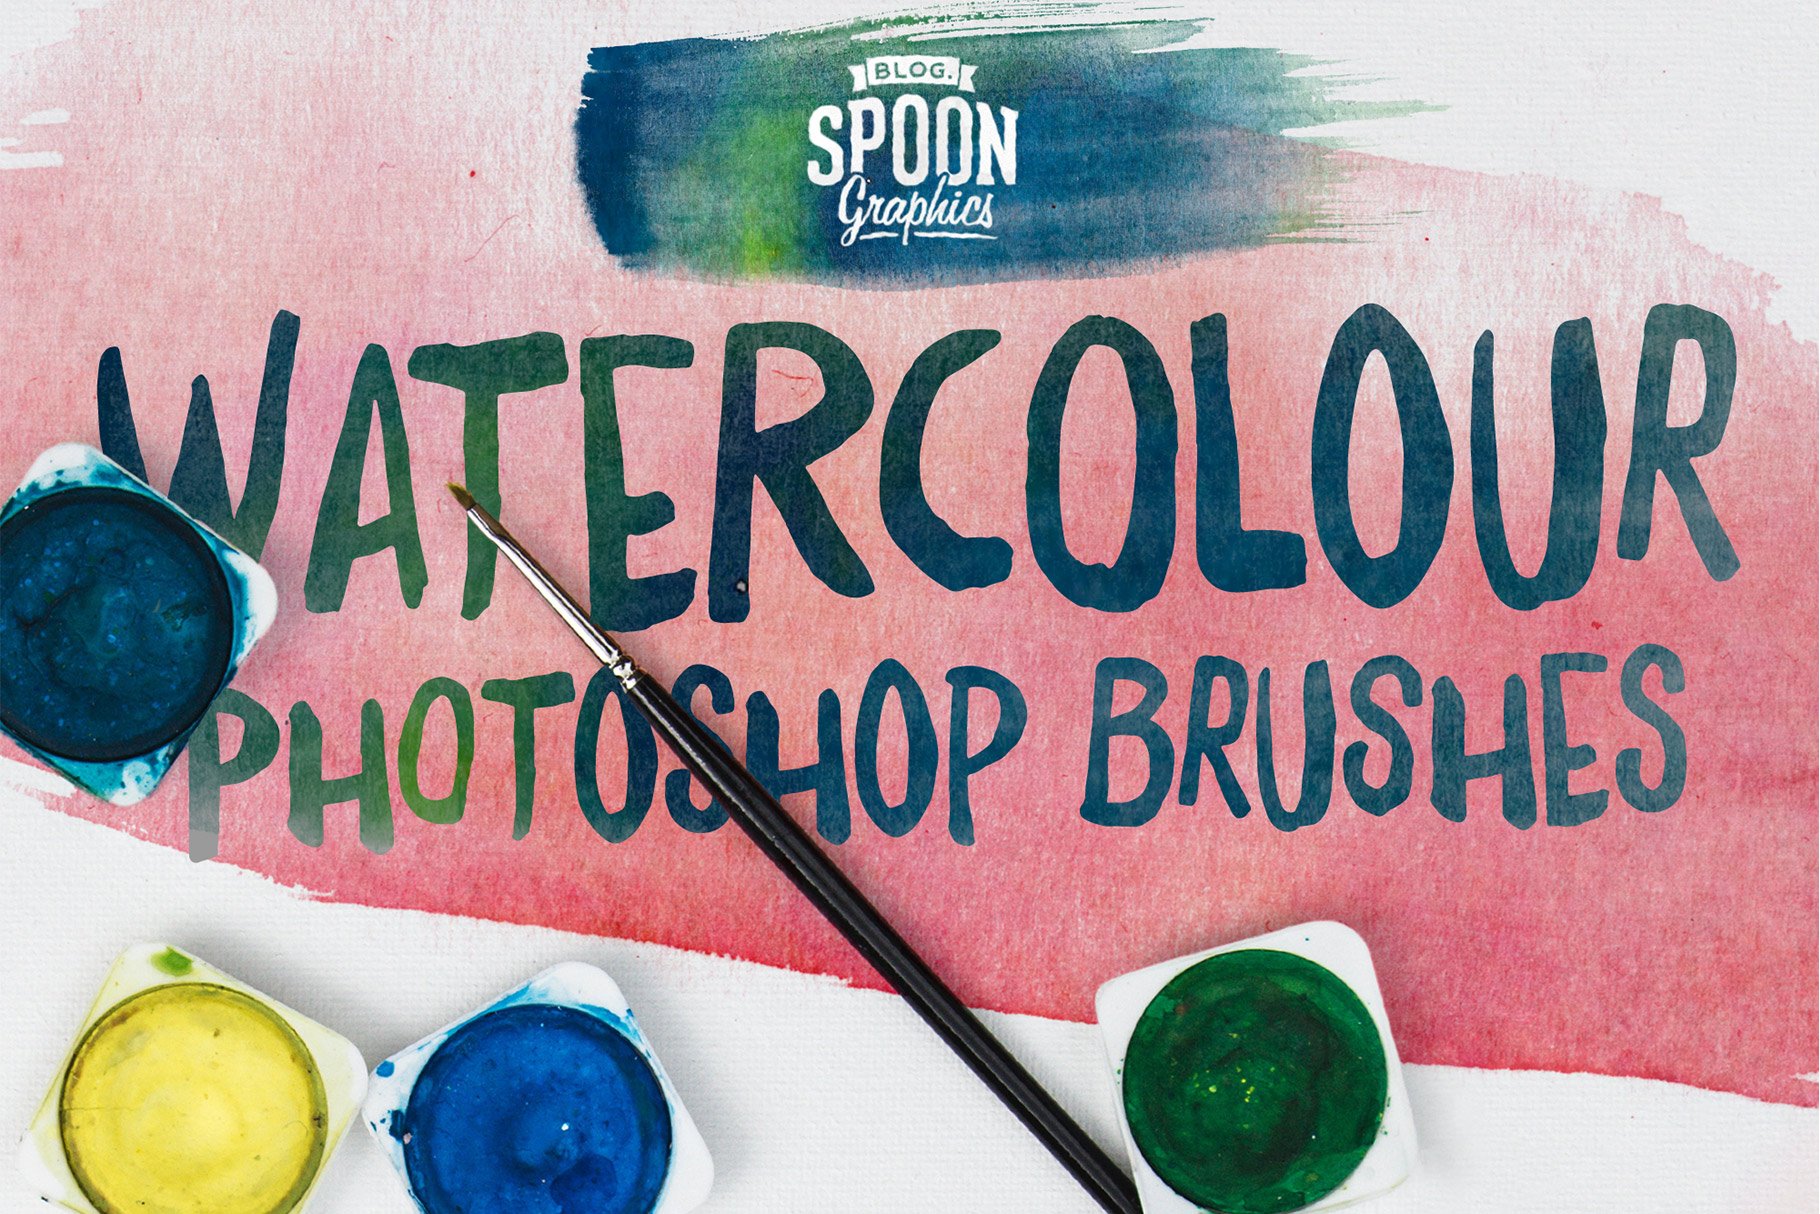 14 Watercolour Photoshop Brushescover image.